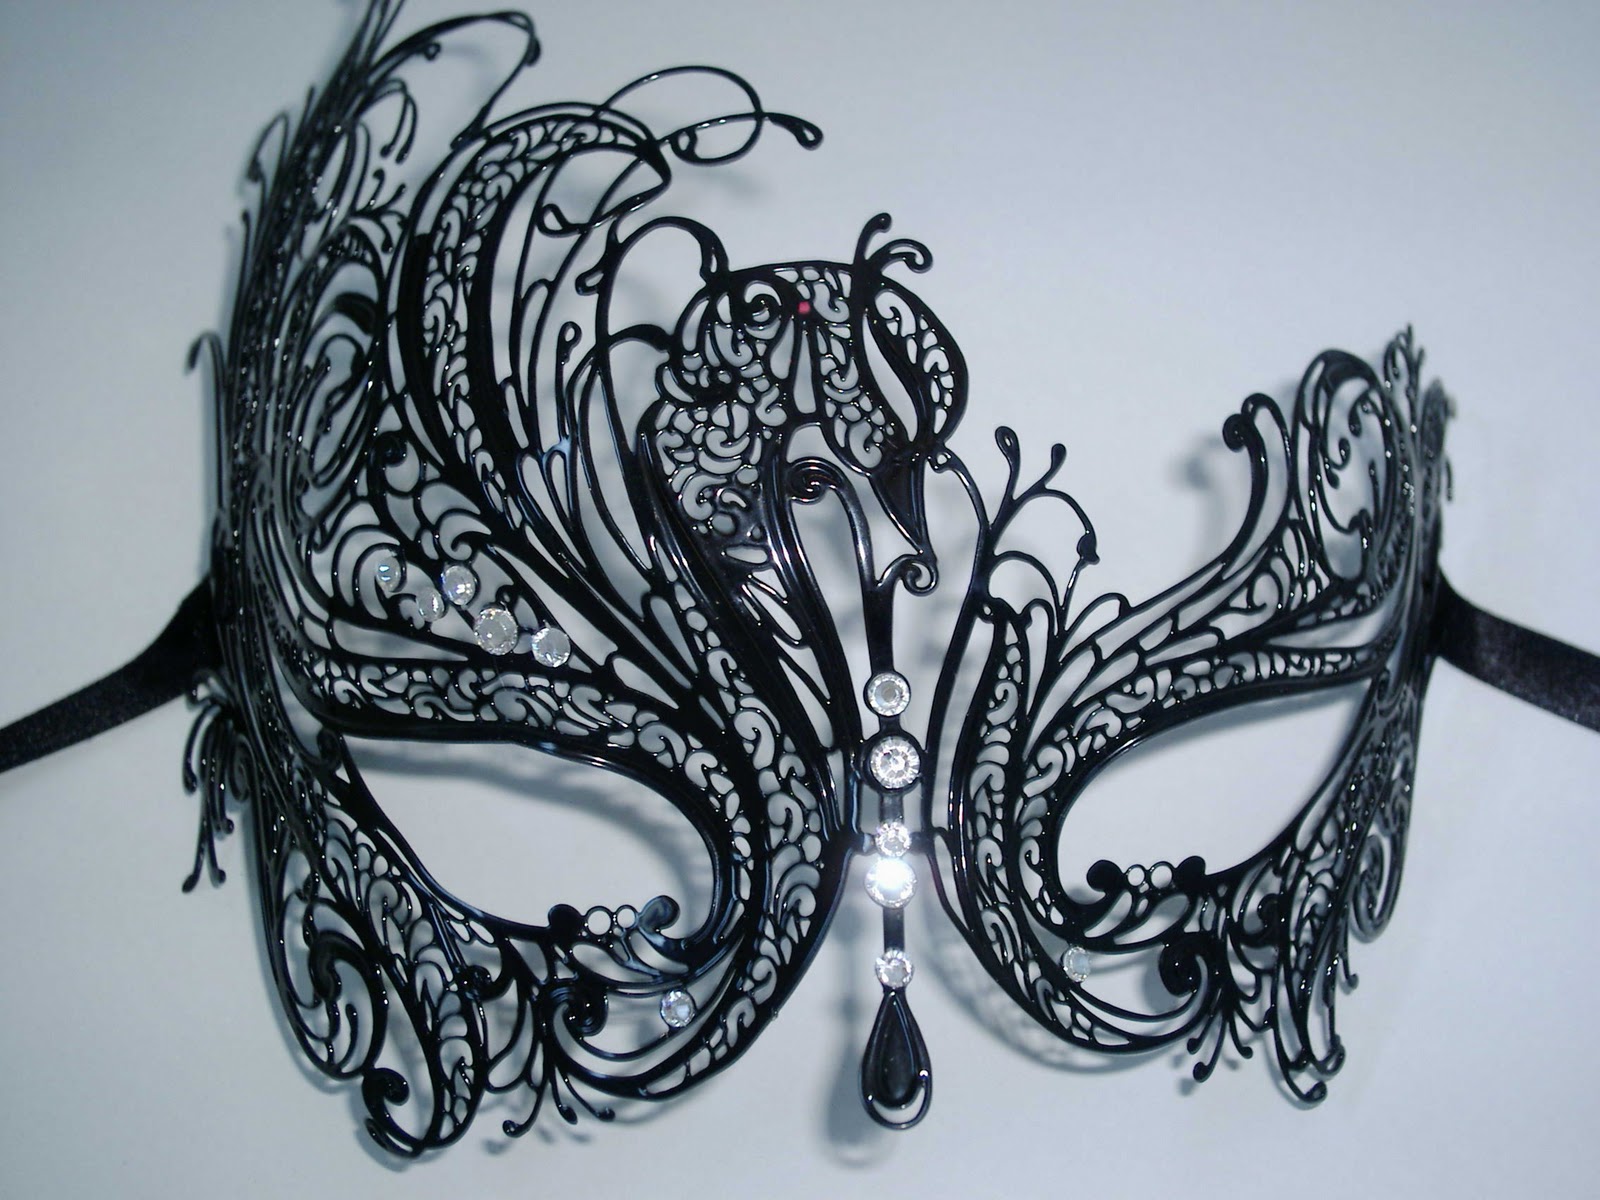 Masquerade Masks Drawing at GetDrawings Free download